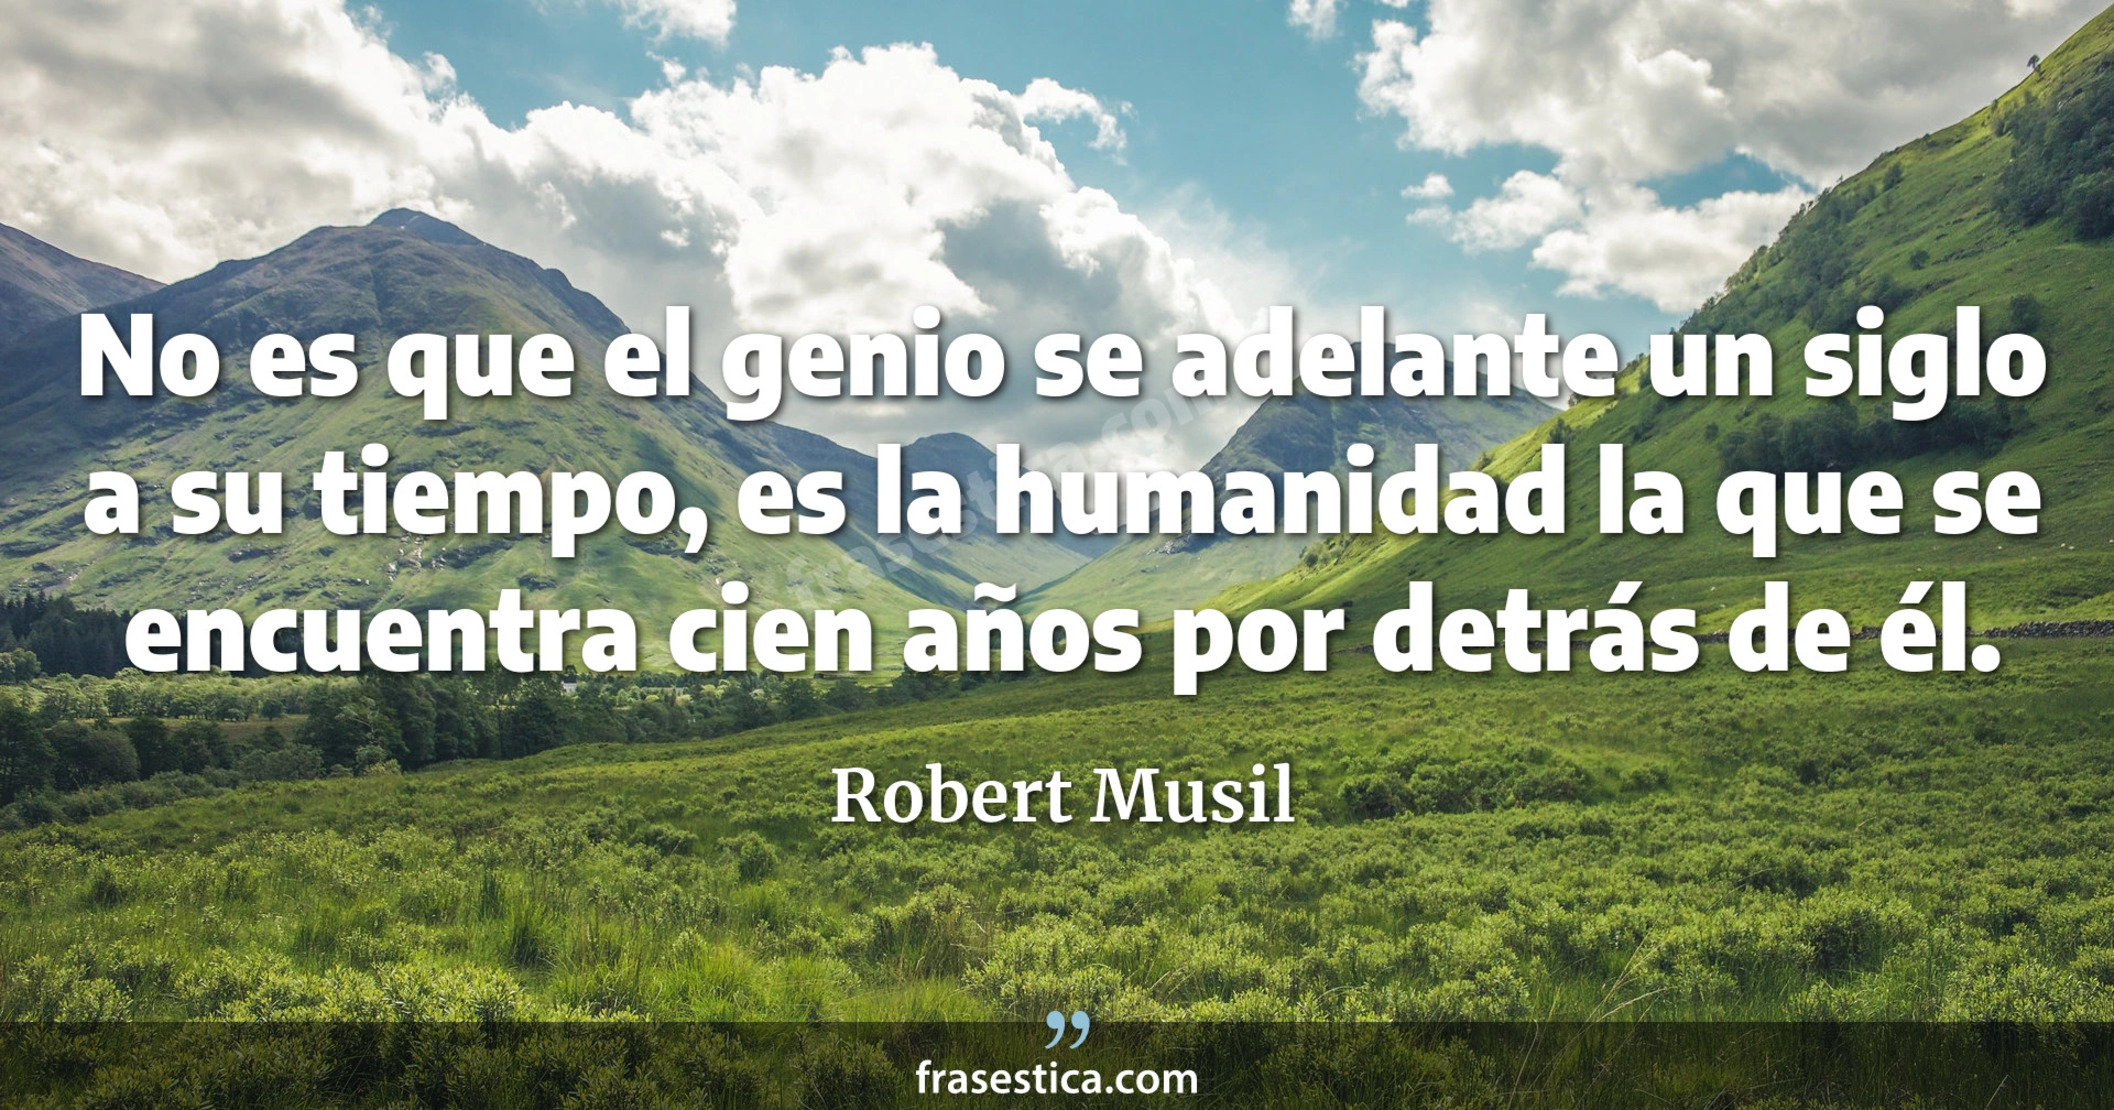 No es que el genio se adelante un siglo a su tiempo, es la humanidad la que se encuentra cien años por detrás de él. - Robert Musil